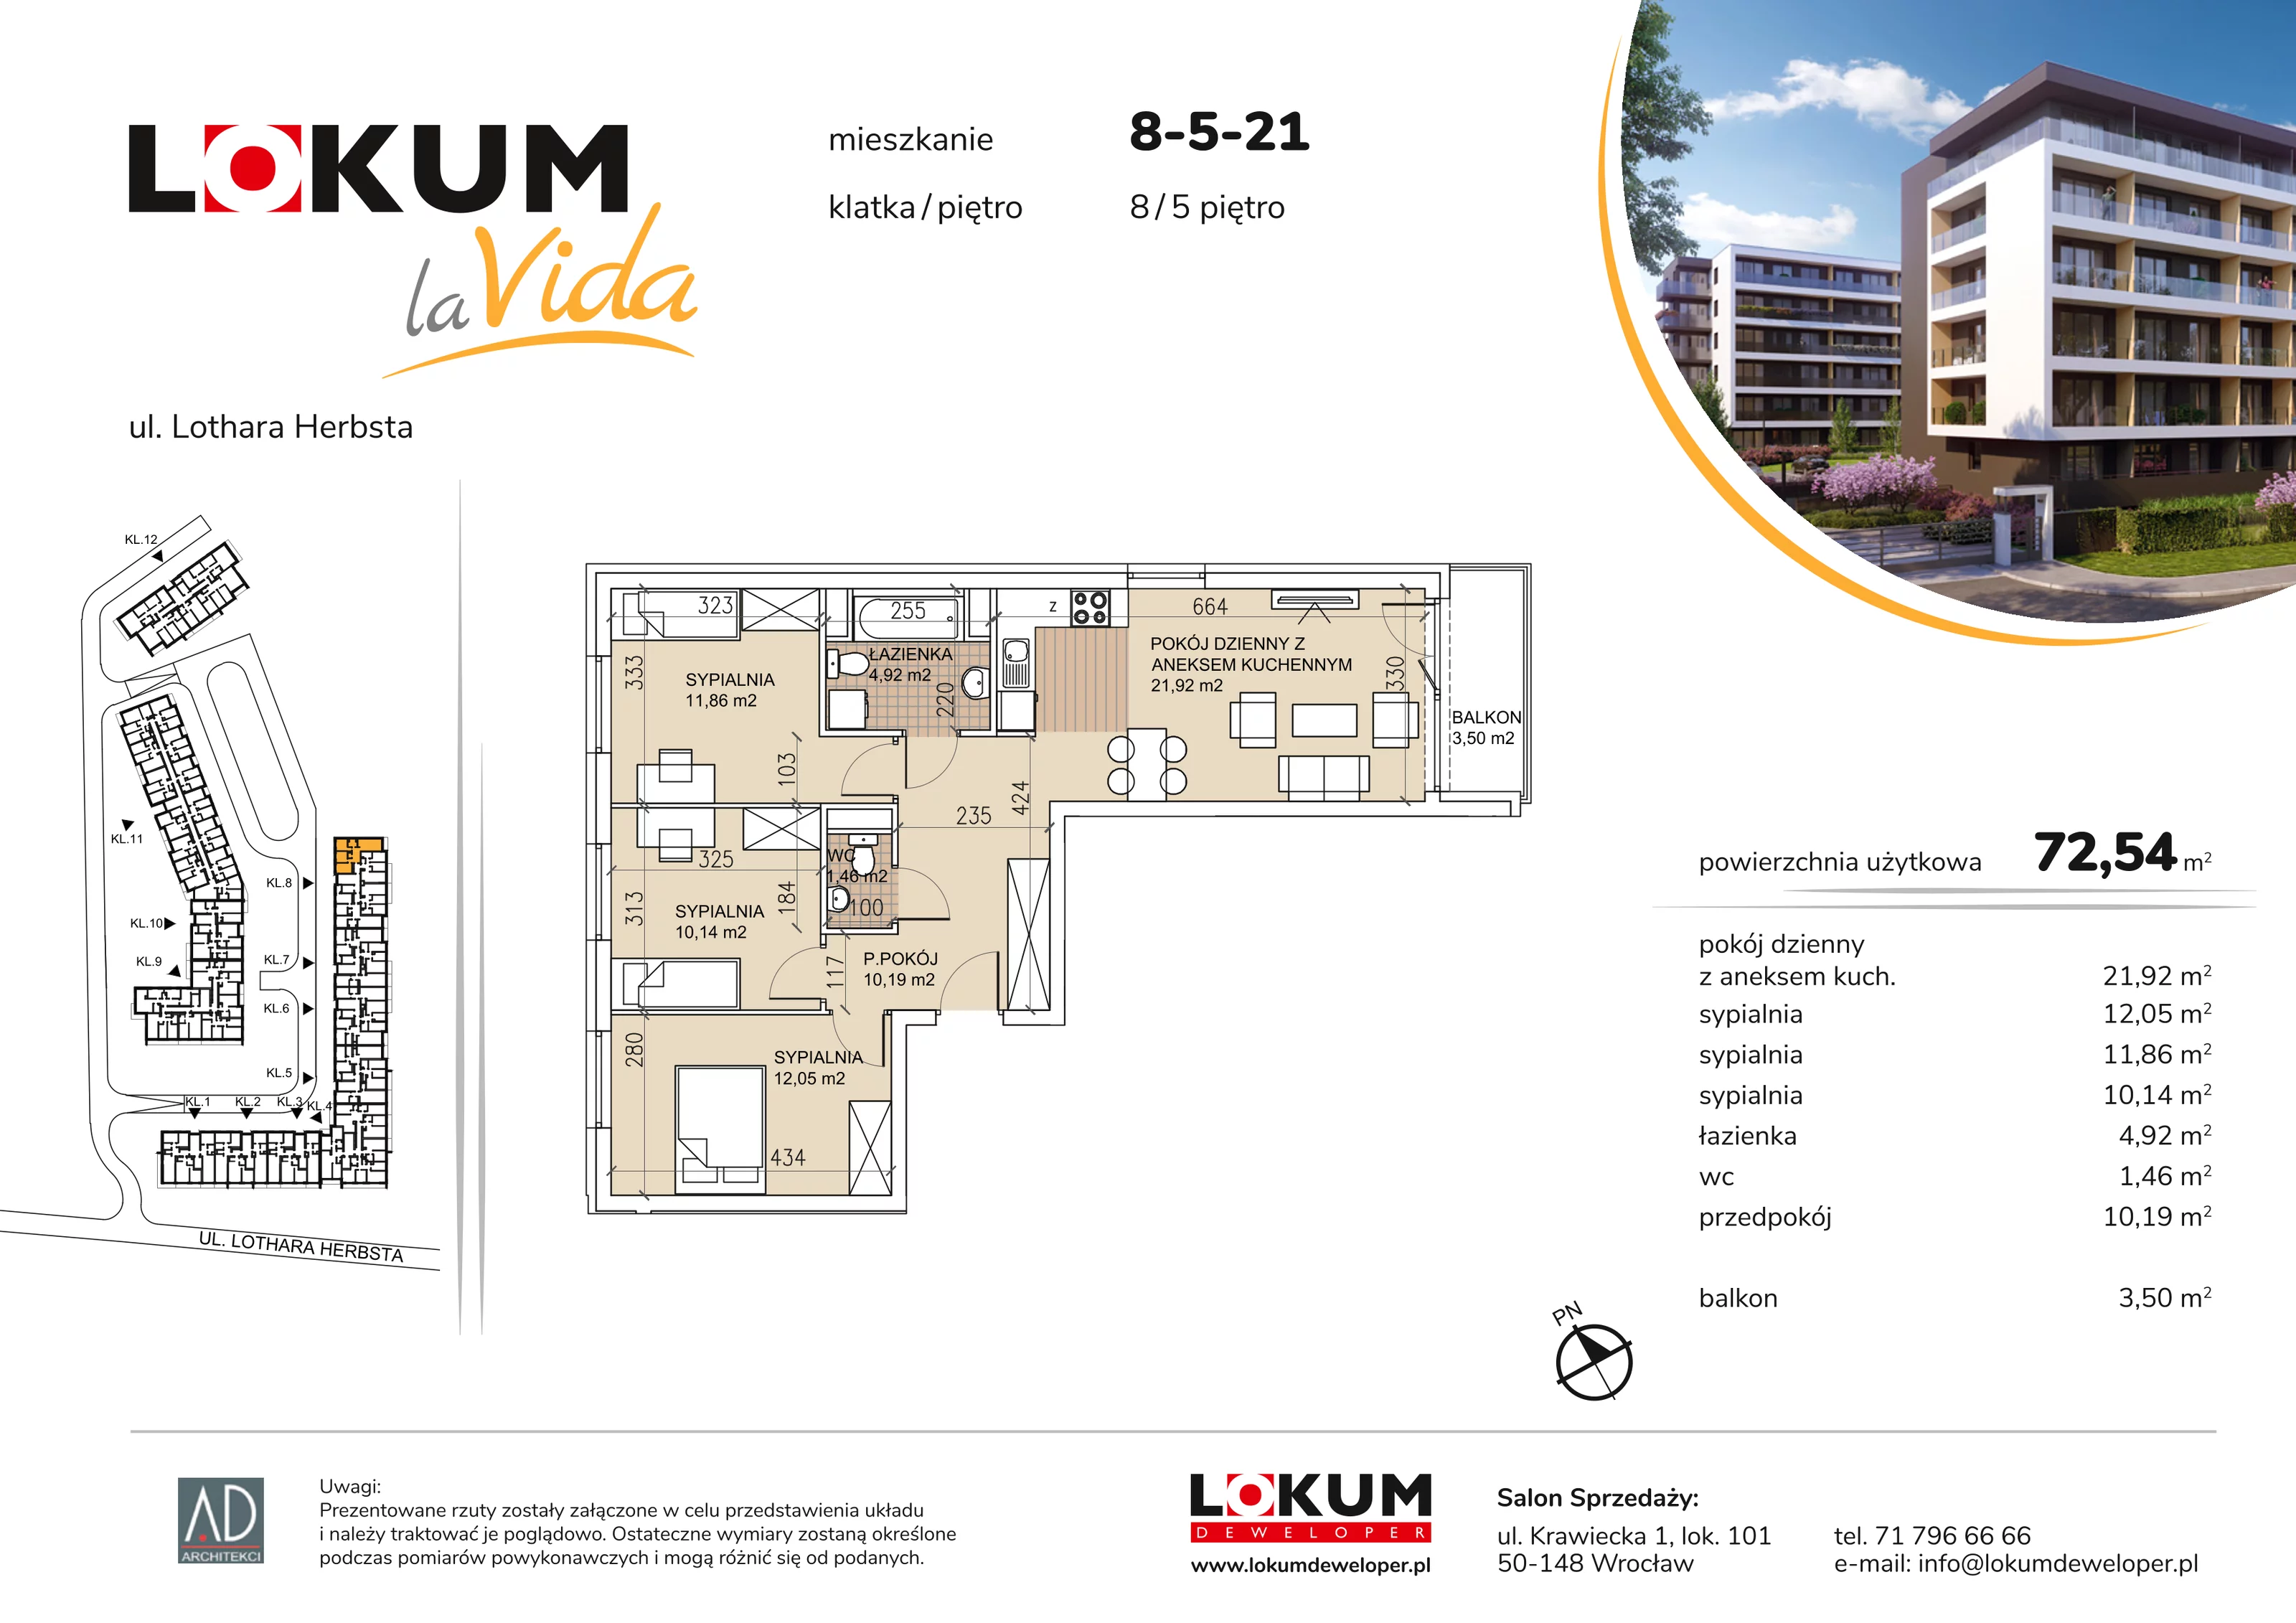 Mieszkanie 72,54 m², piętro 5, oferta nr 8-5-21, Lokum la Vida, Wrocław, Sołtysowice, ul. Lothara Herbsta